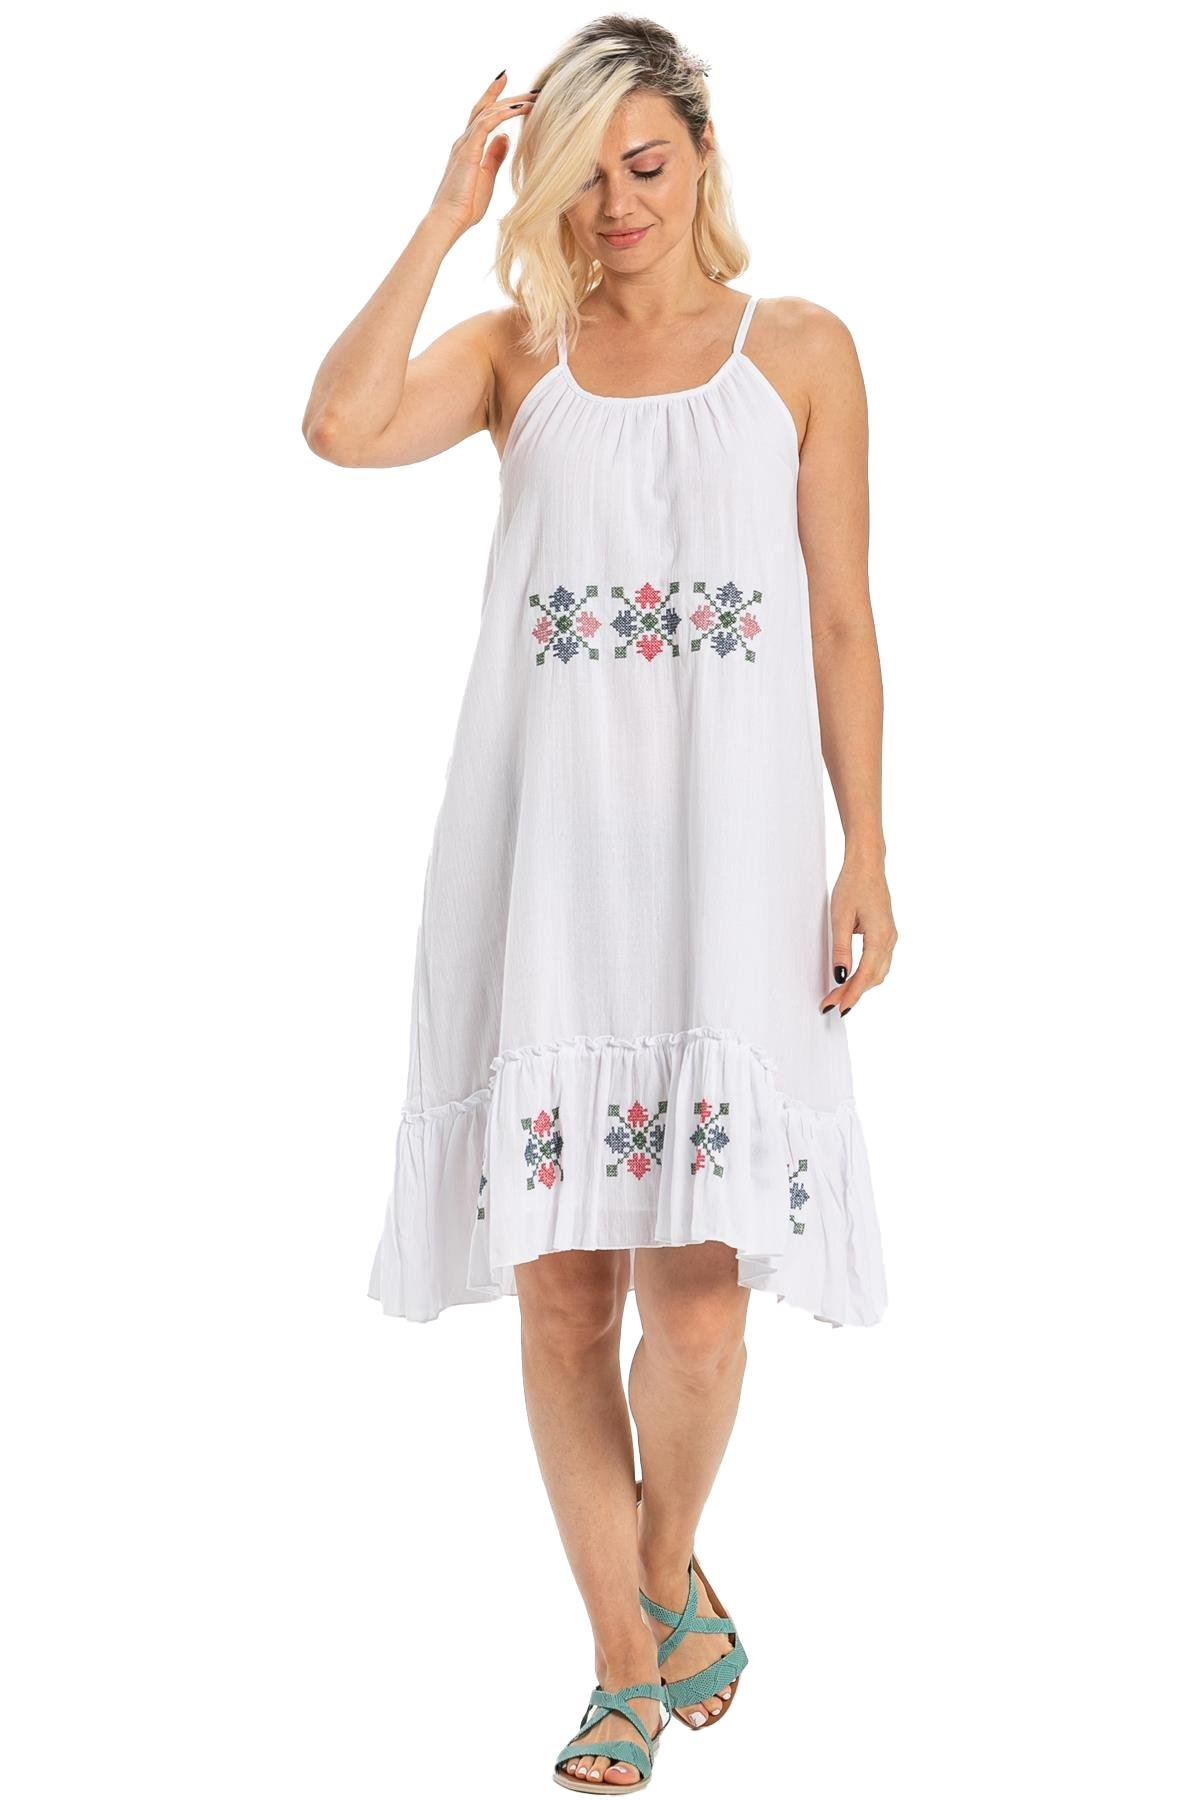 Askılı Şile Bezi Işıl Kısa Yazlık Elbise Beyaz | silemoda.com